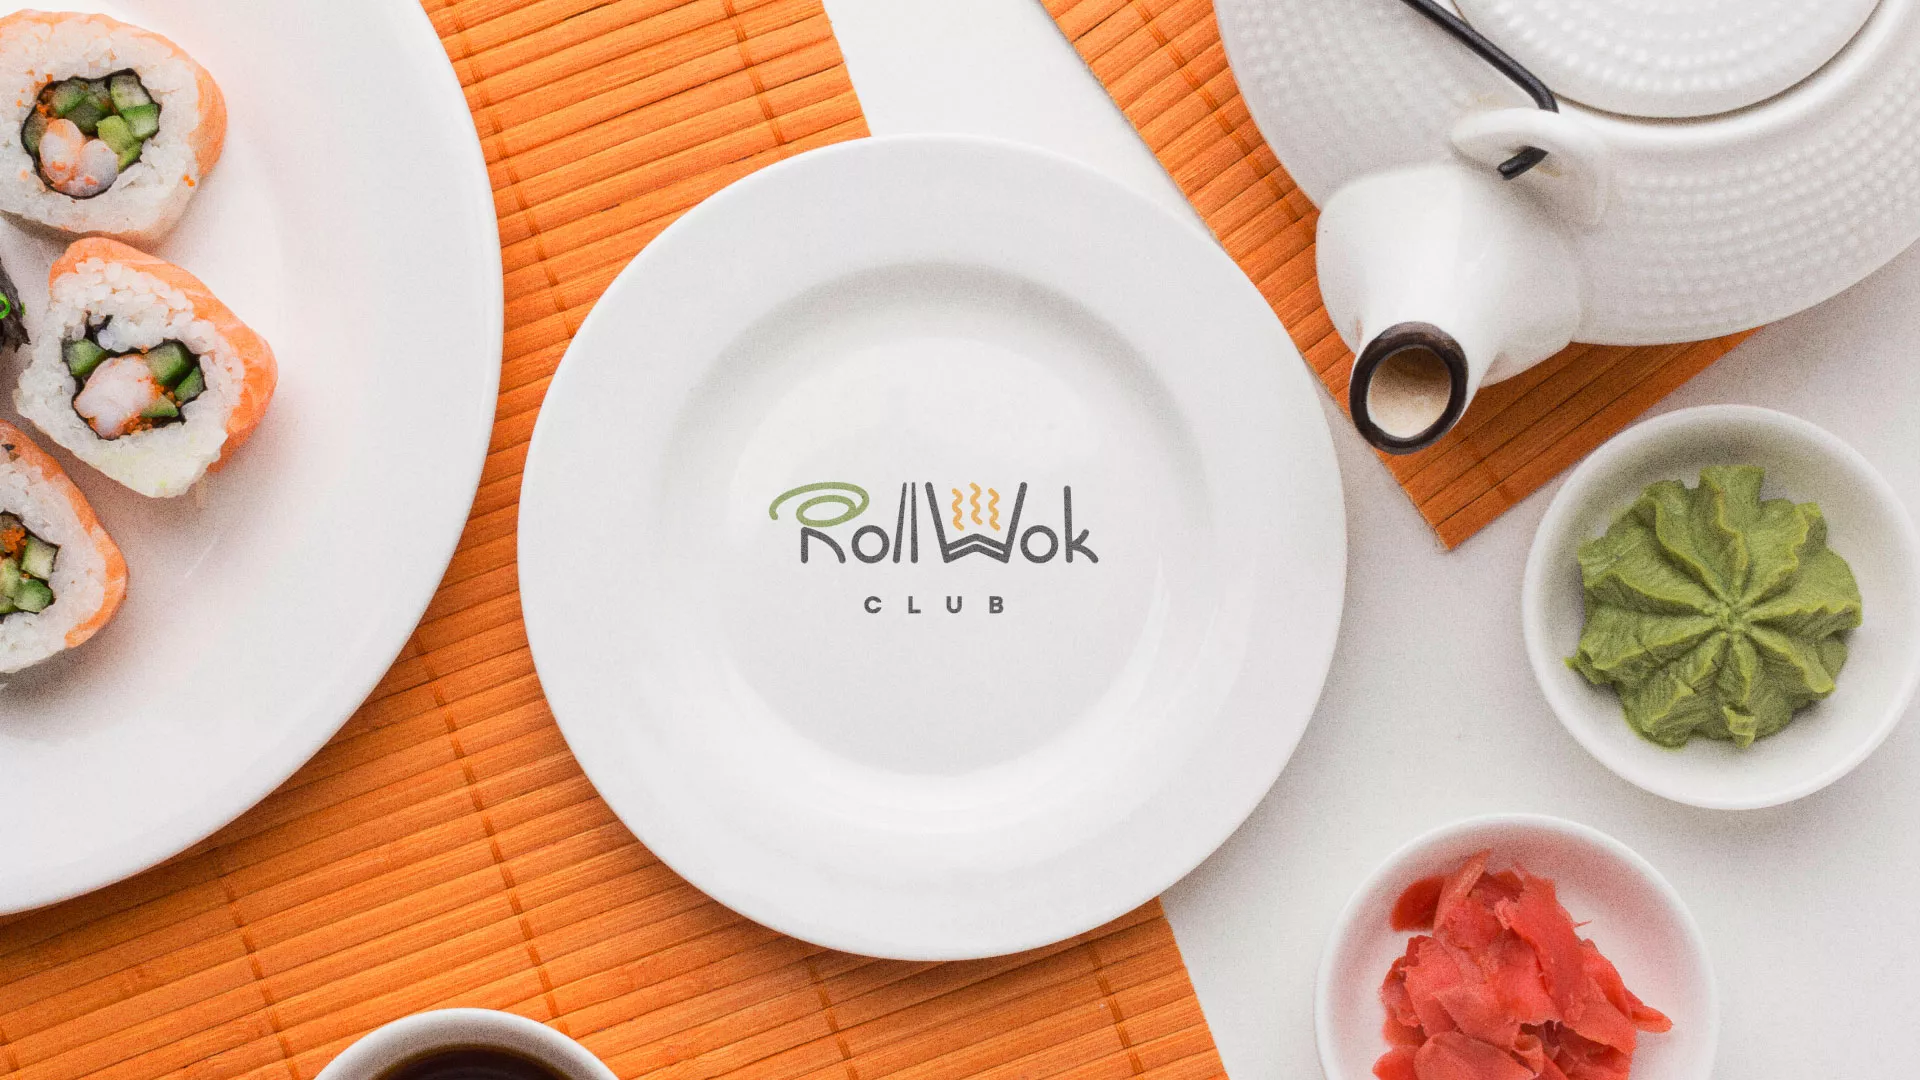 Разработка логотипа и фирменного стиля суши-бара «Roll Wok Club» в Новом Осколе